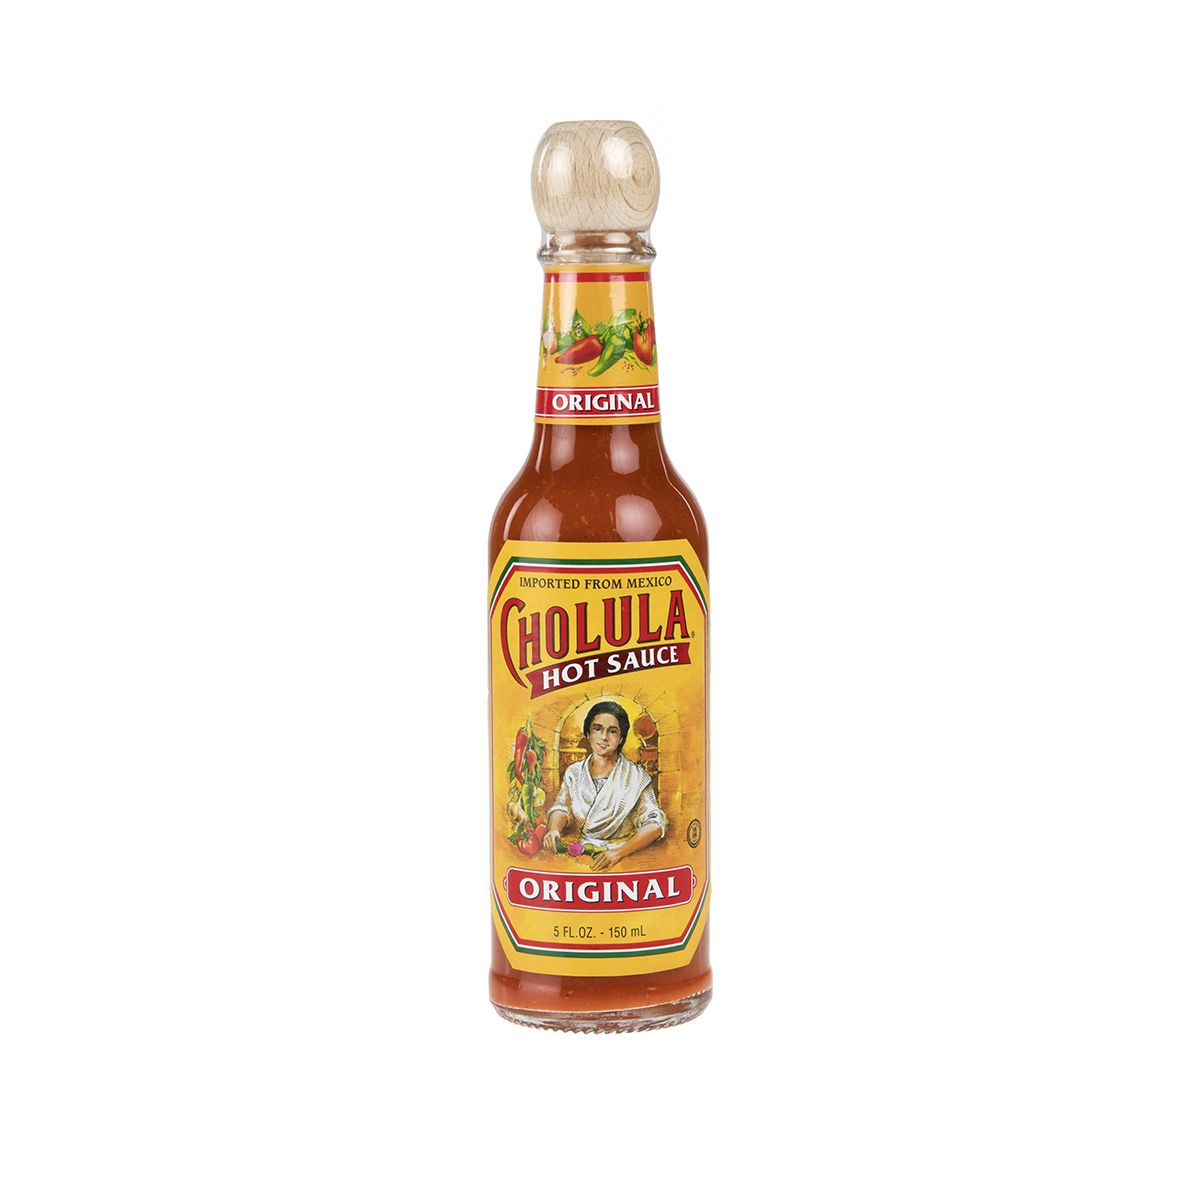 Cholula Original Hot Sauce 5 OZ